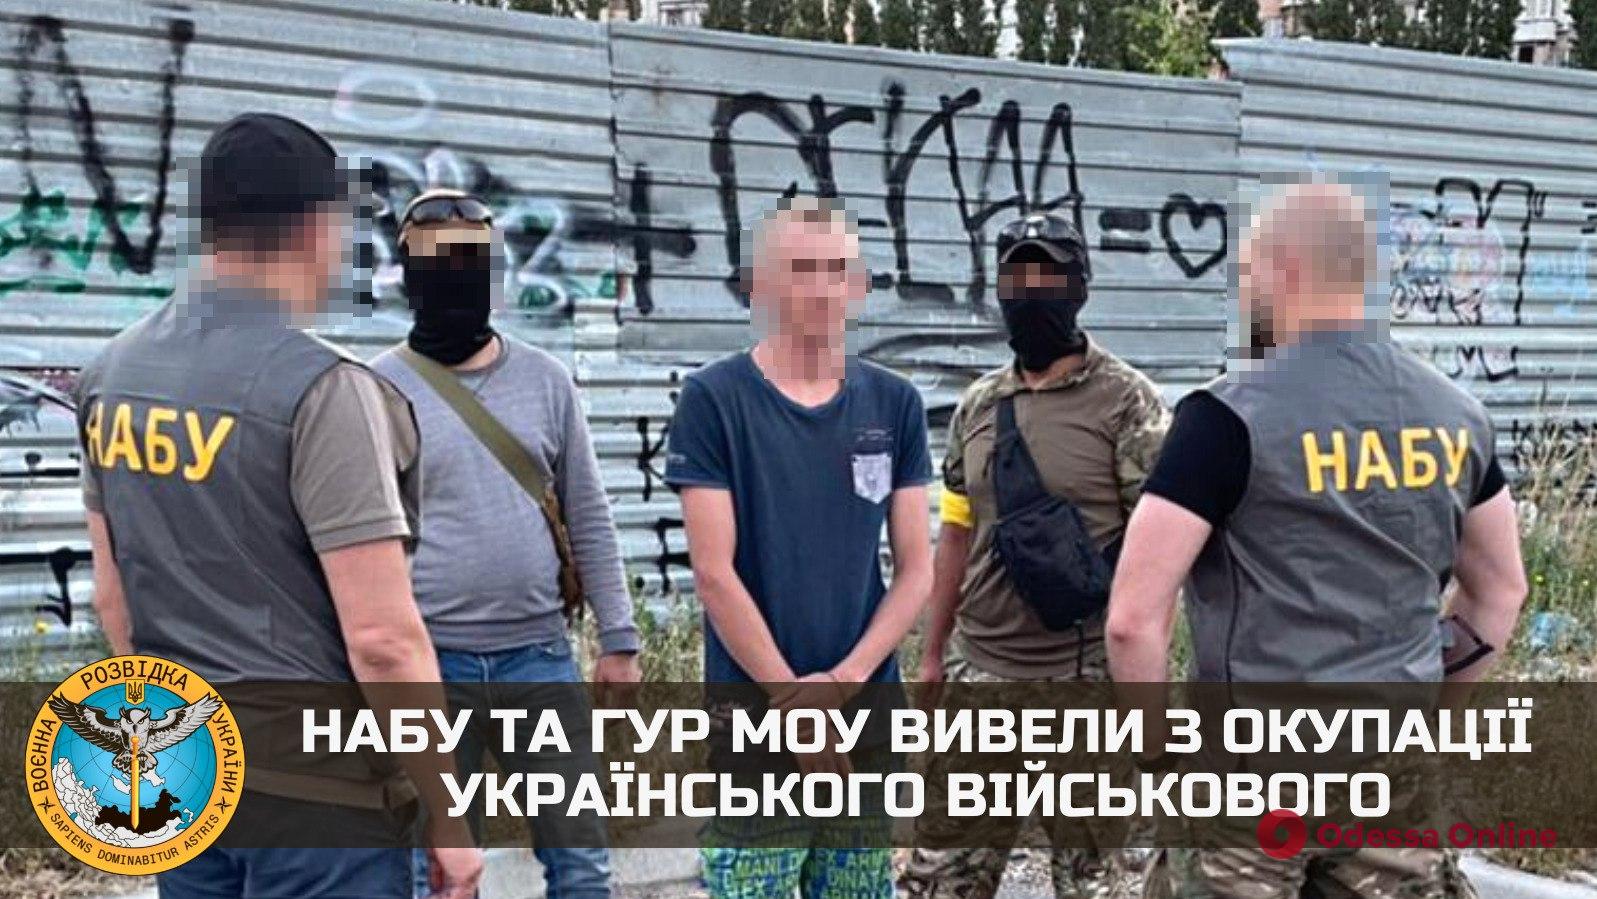 Сотрудники НАБУ и ГУР вывели из оккупированной территории украинского военного